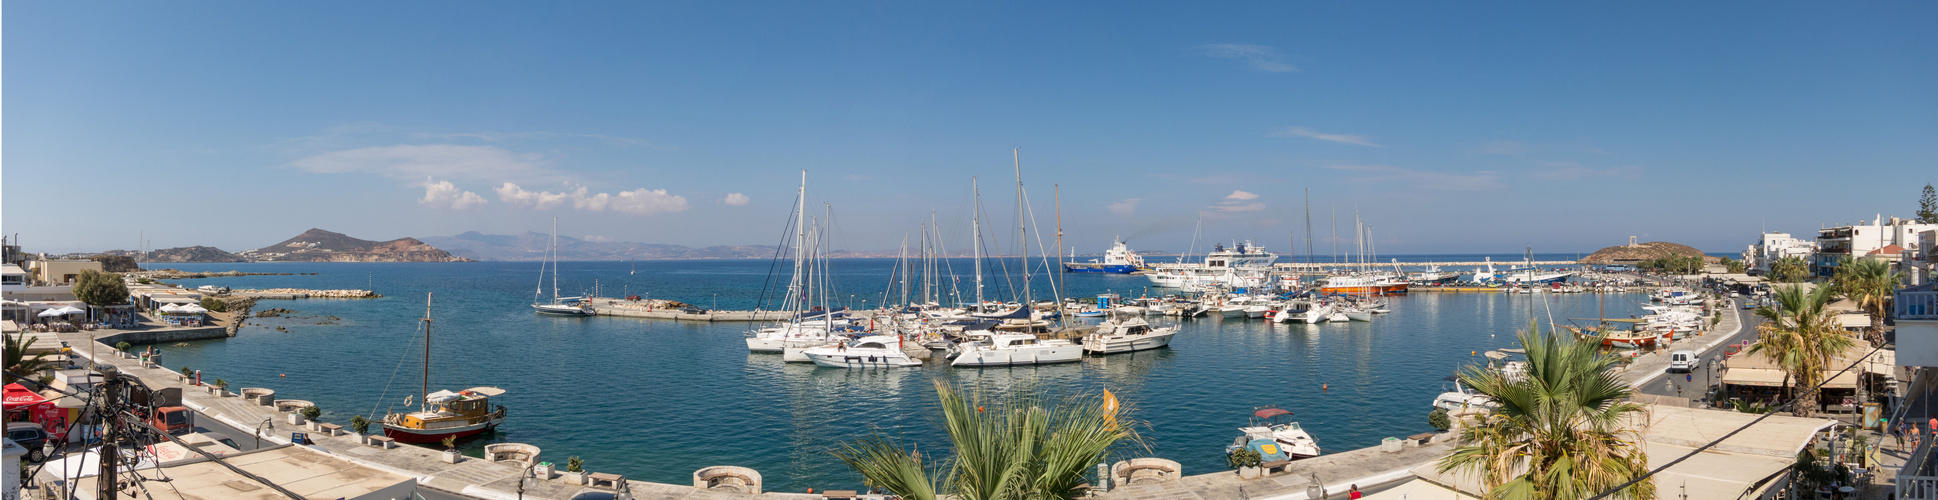 Panorama Naxos Hafen